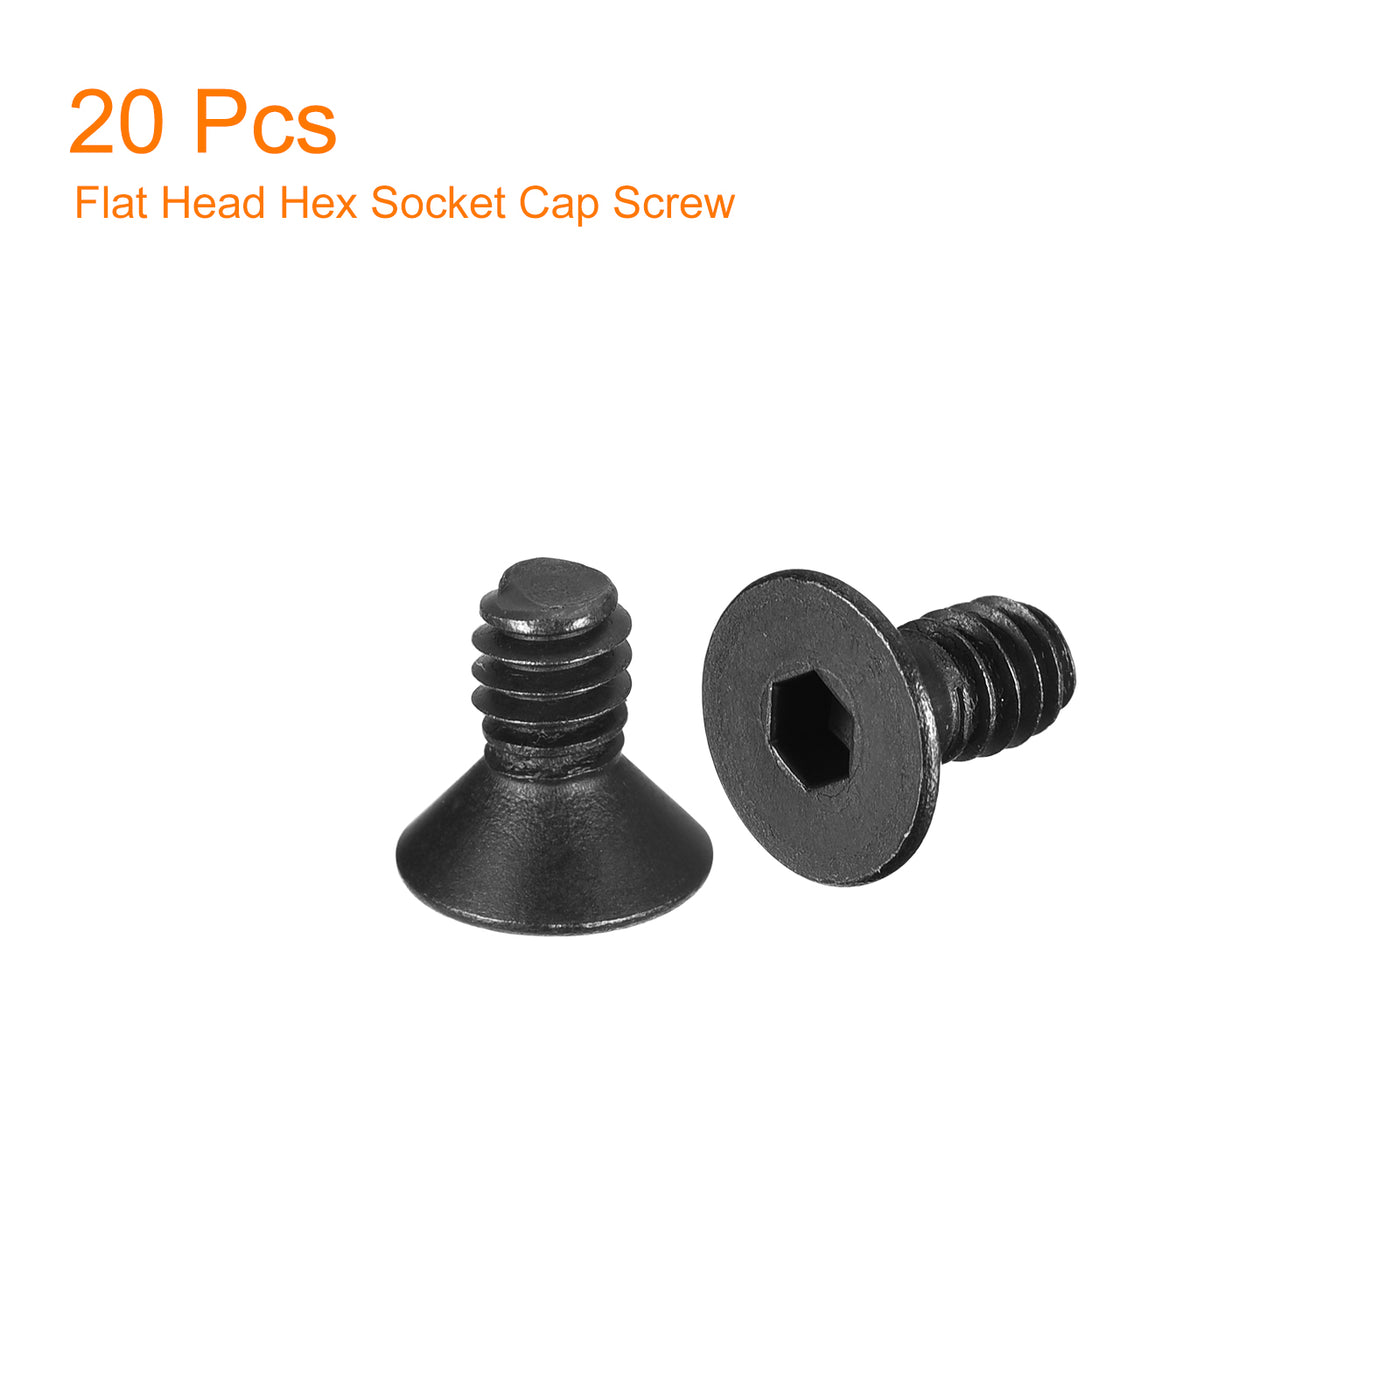 uxcell Uxcell #8-32x1/4" Flat Head Socket Cap Screws, 10.9 Grade Carbon, Black, 20pcs